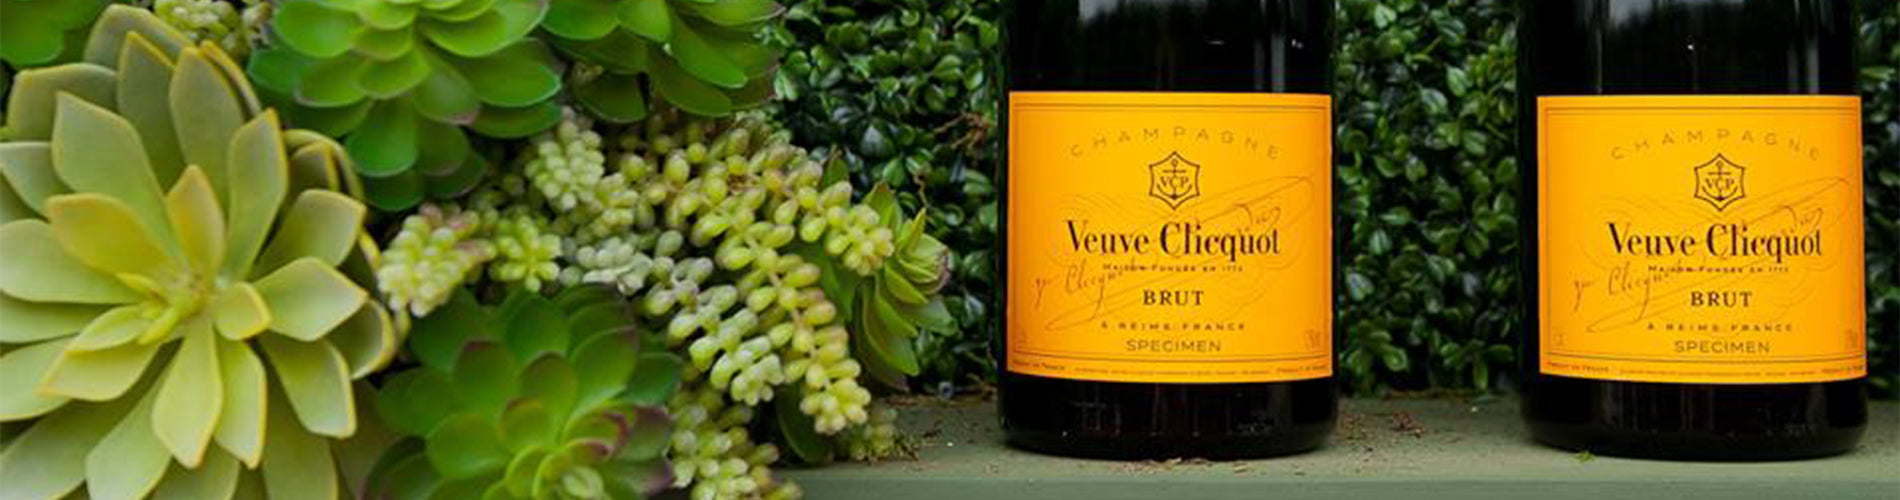 Wine O\'Briens – Veuve Clicquot